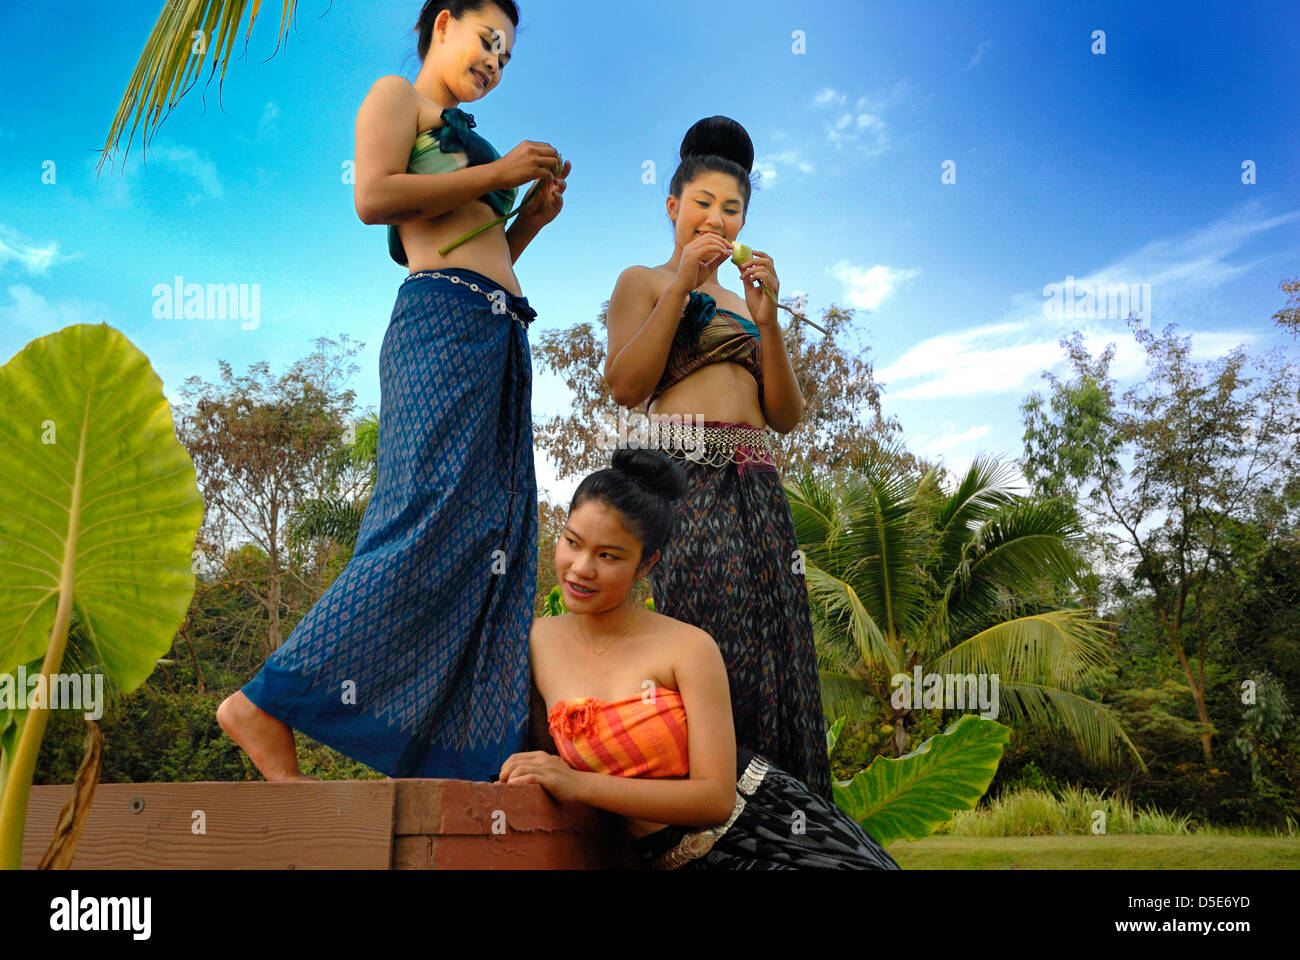 Trois jolies filles thaïlandaises à partir d'un complexe à Udon Thani Thaïlande prises le 20/01/2012 Banque D'Images